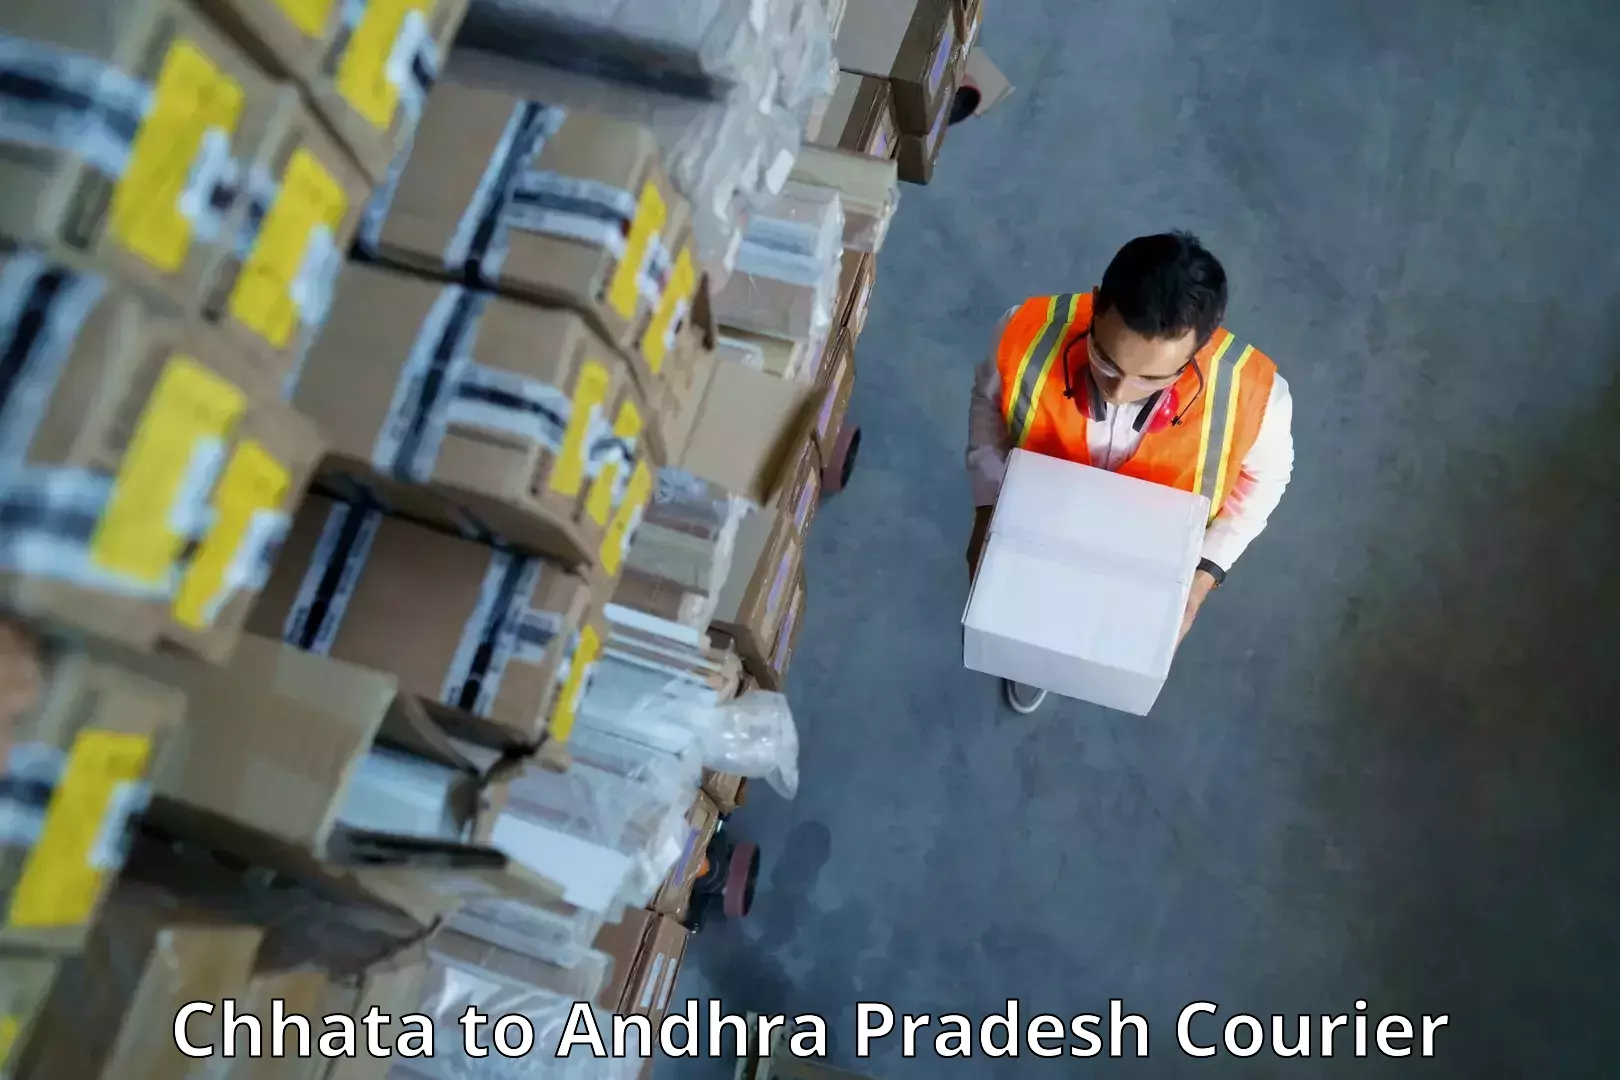 Express logistics service Chhata to Vempalli